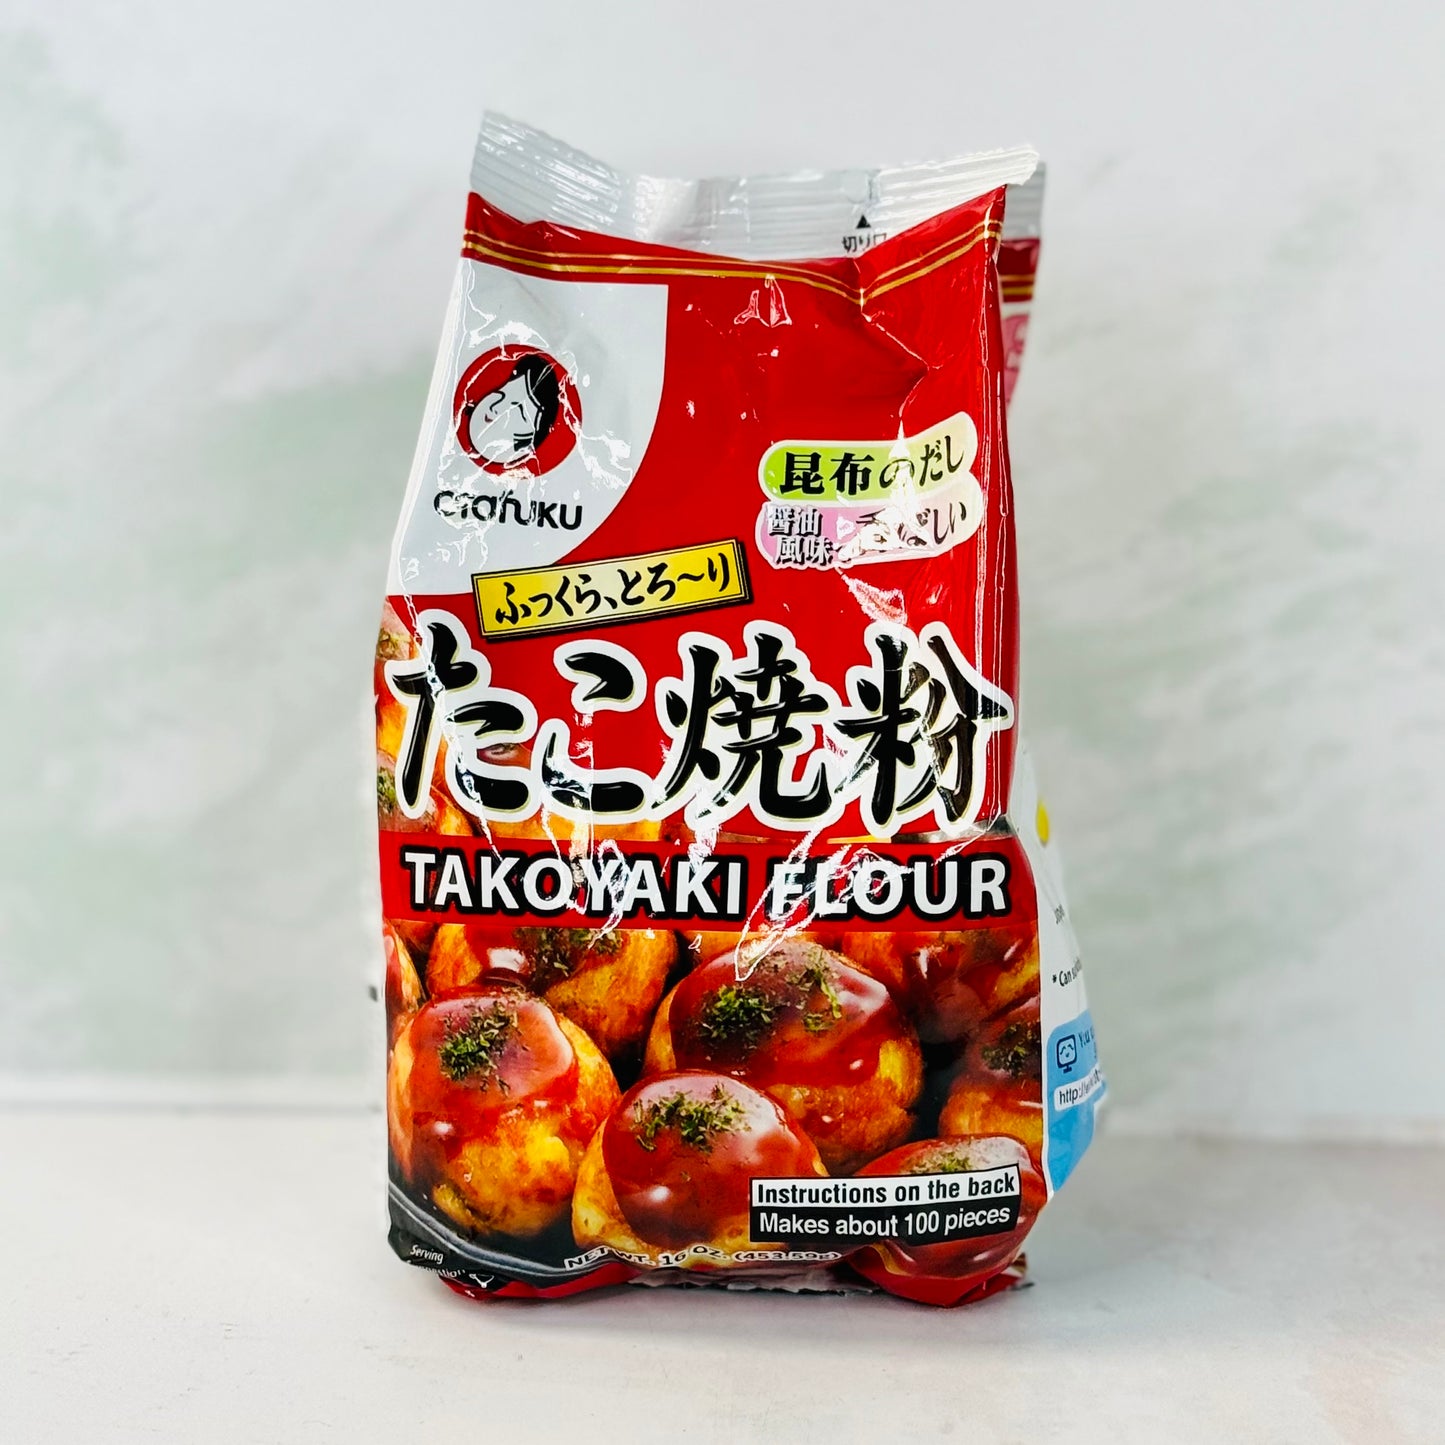 Takoyaki Flour